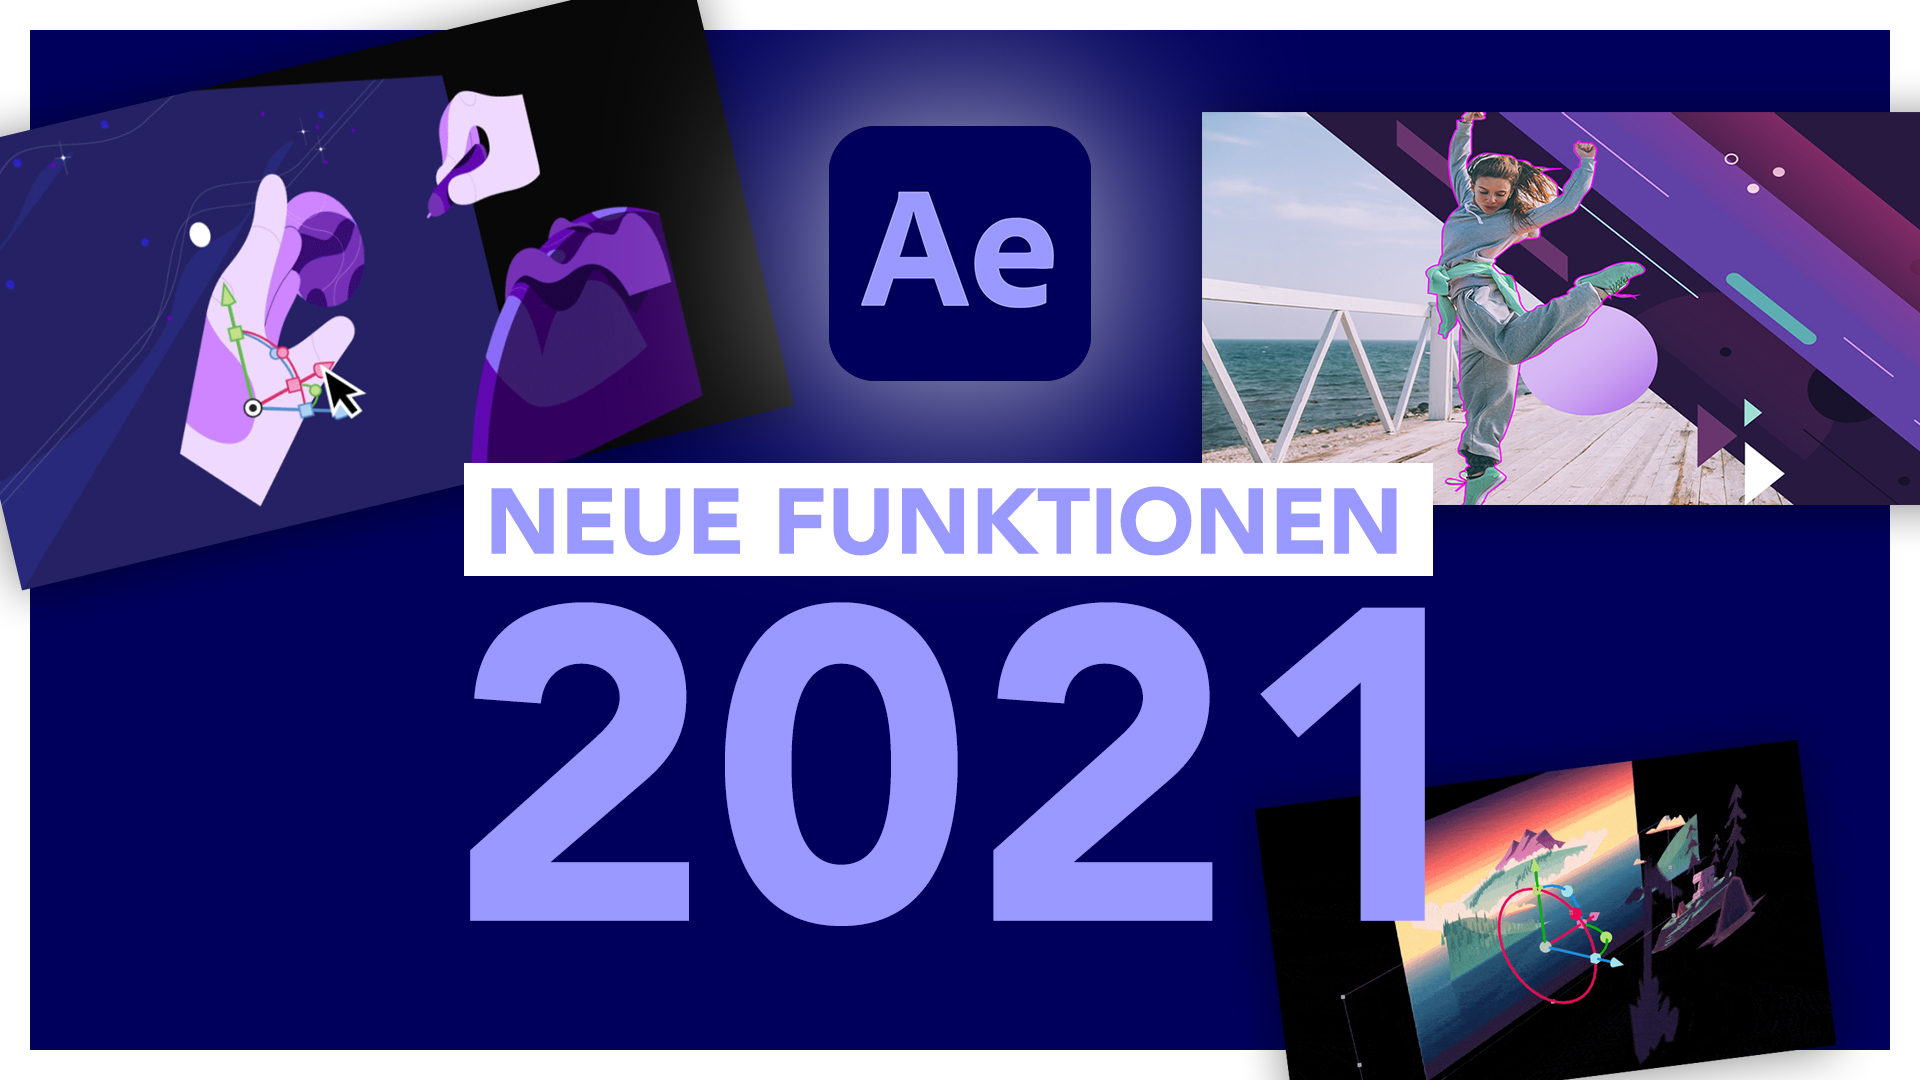 Neu in Adobe After Effects 2021 (Version 17.5): Alle neuen Funktionen im Überblick